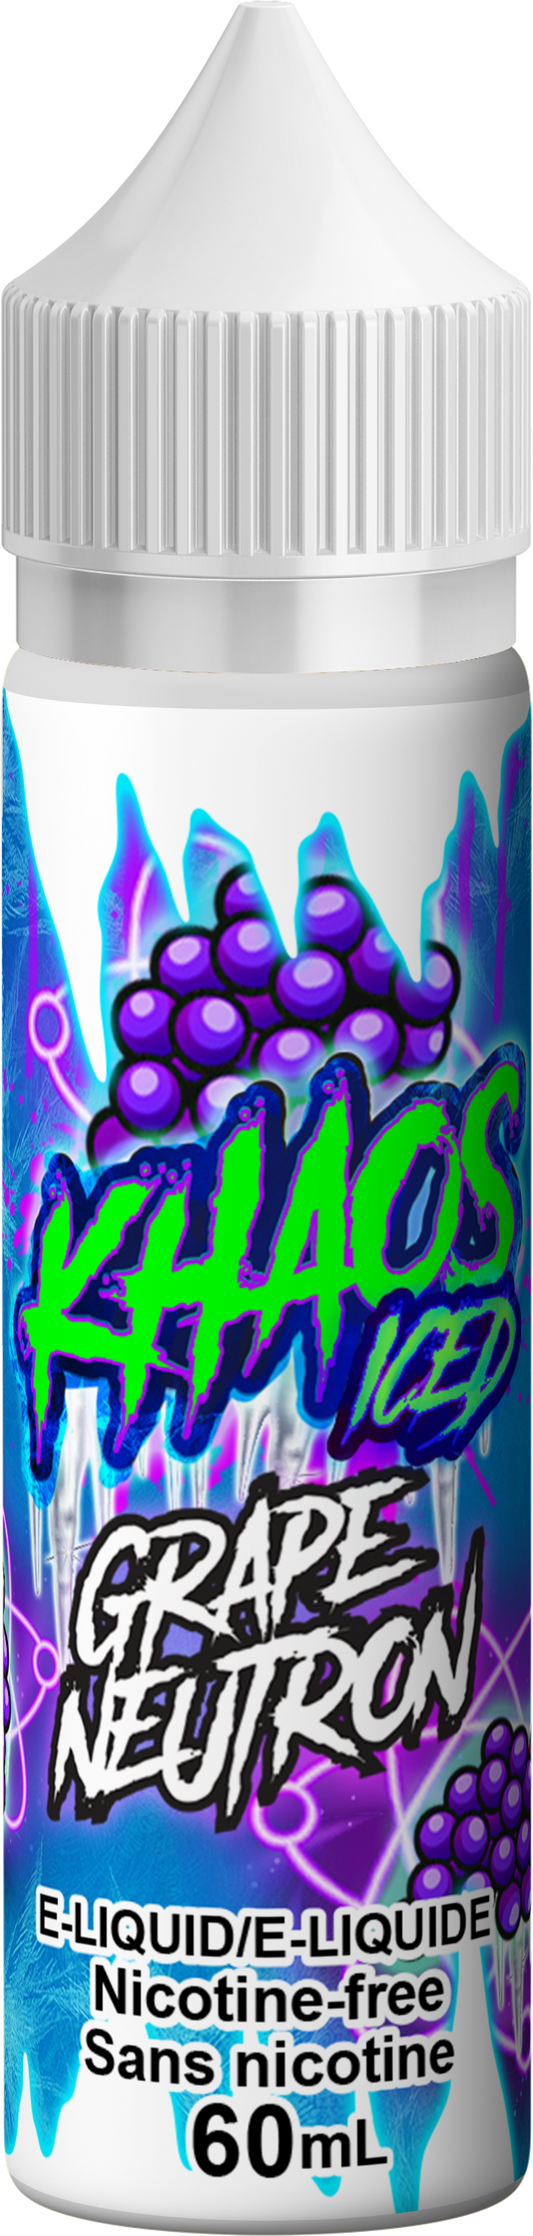 Khaos Iced - Grape Neutron